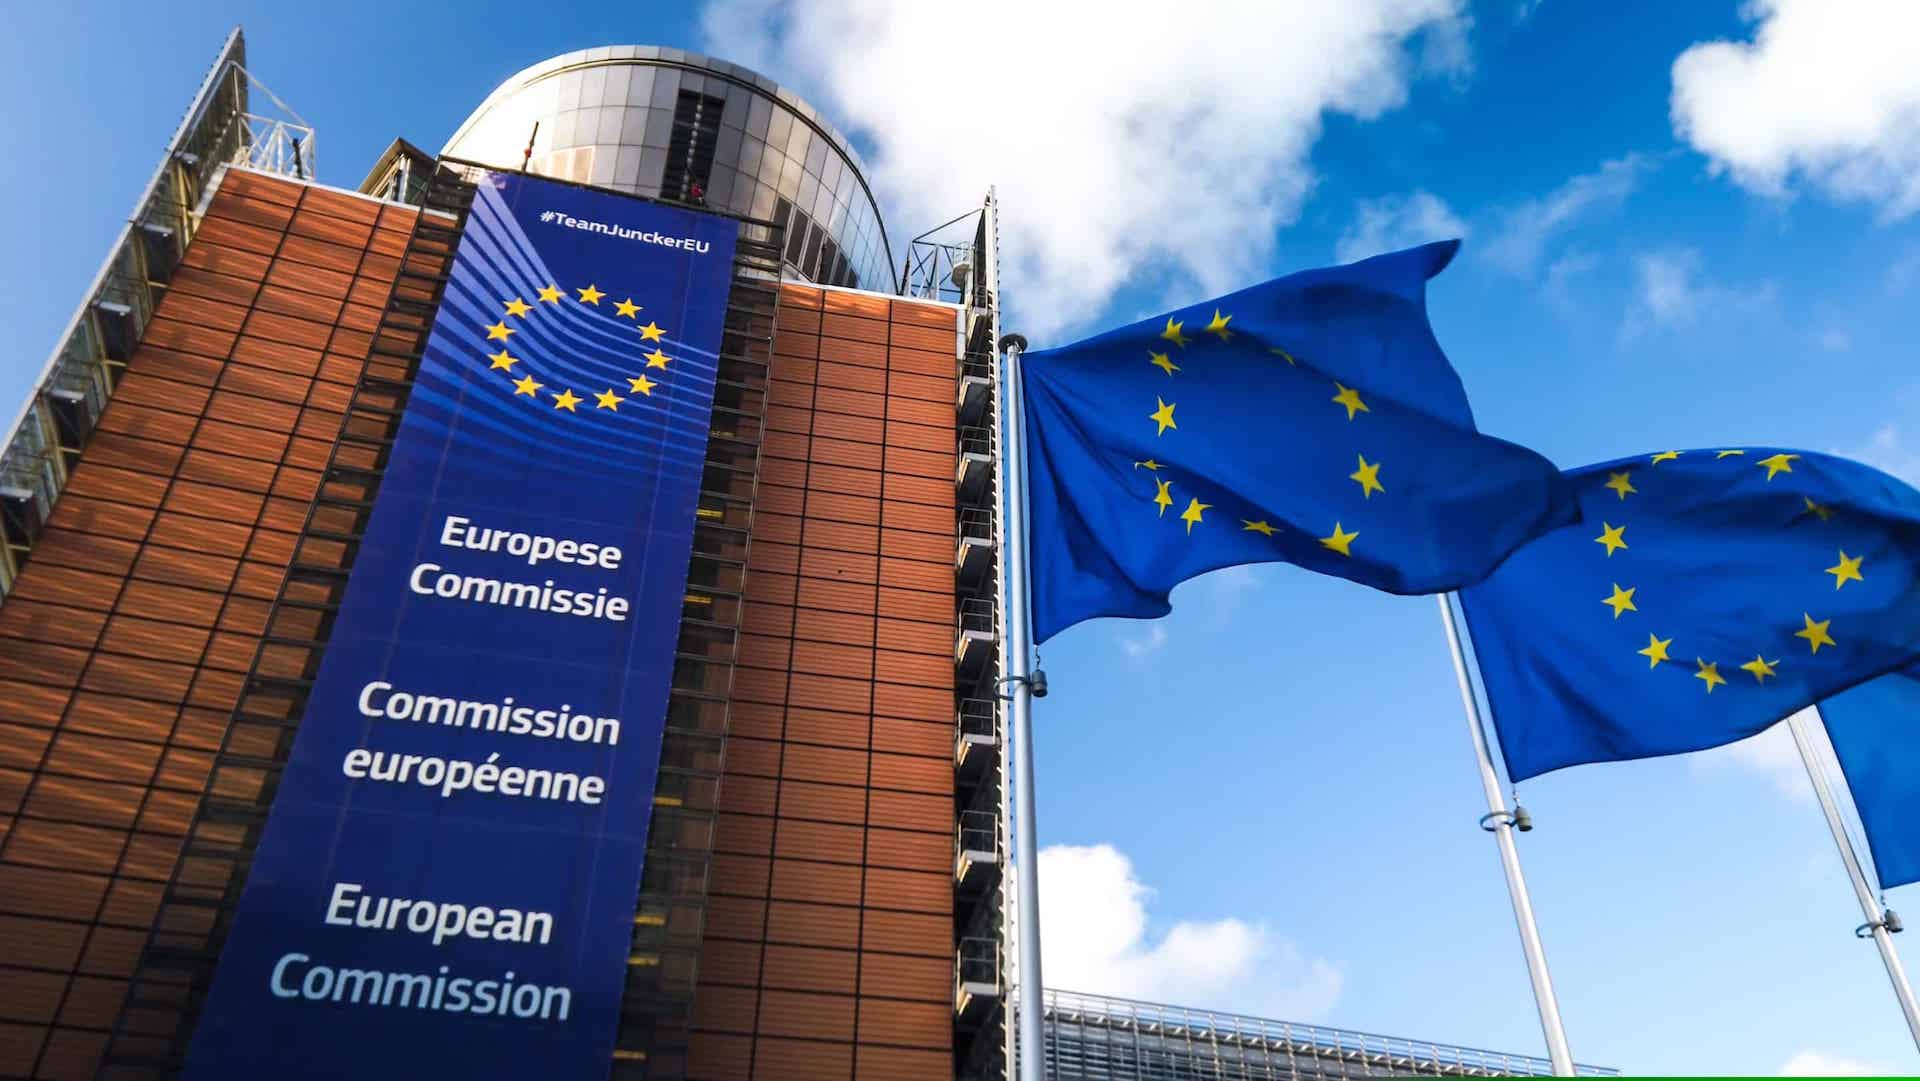 Commissione-europea-e-fuel-2035